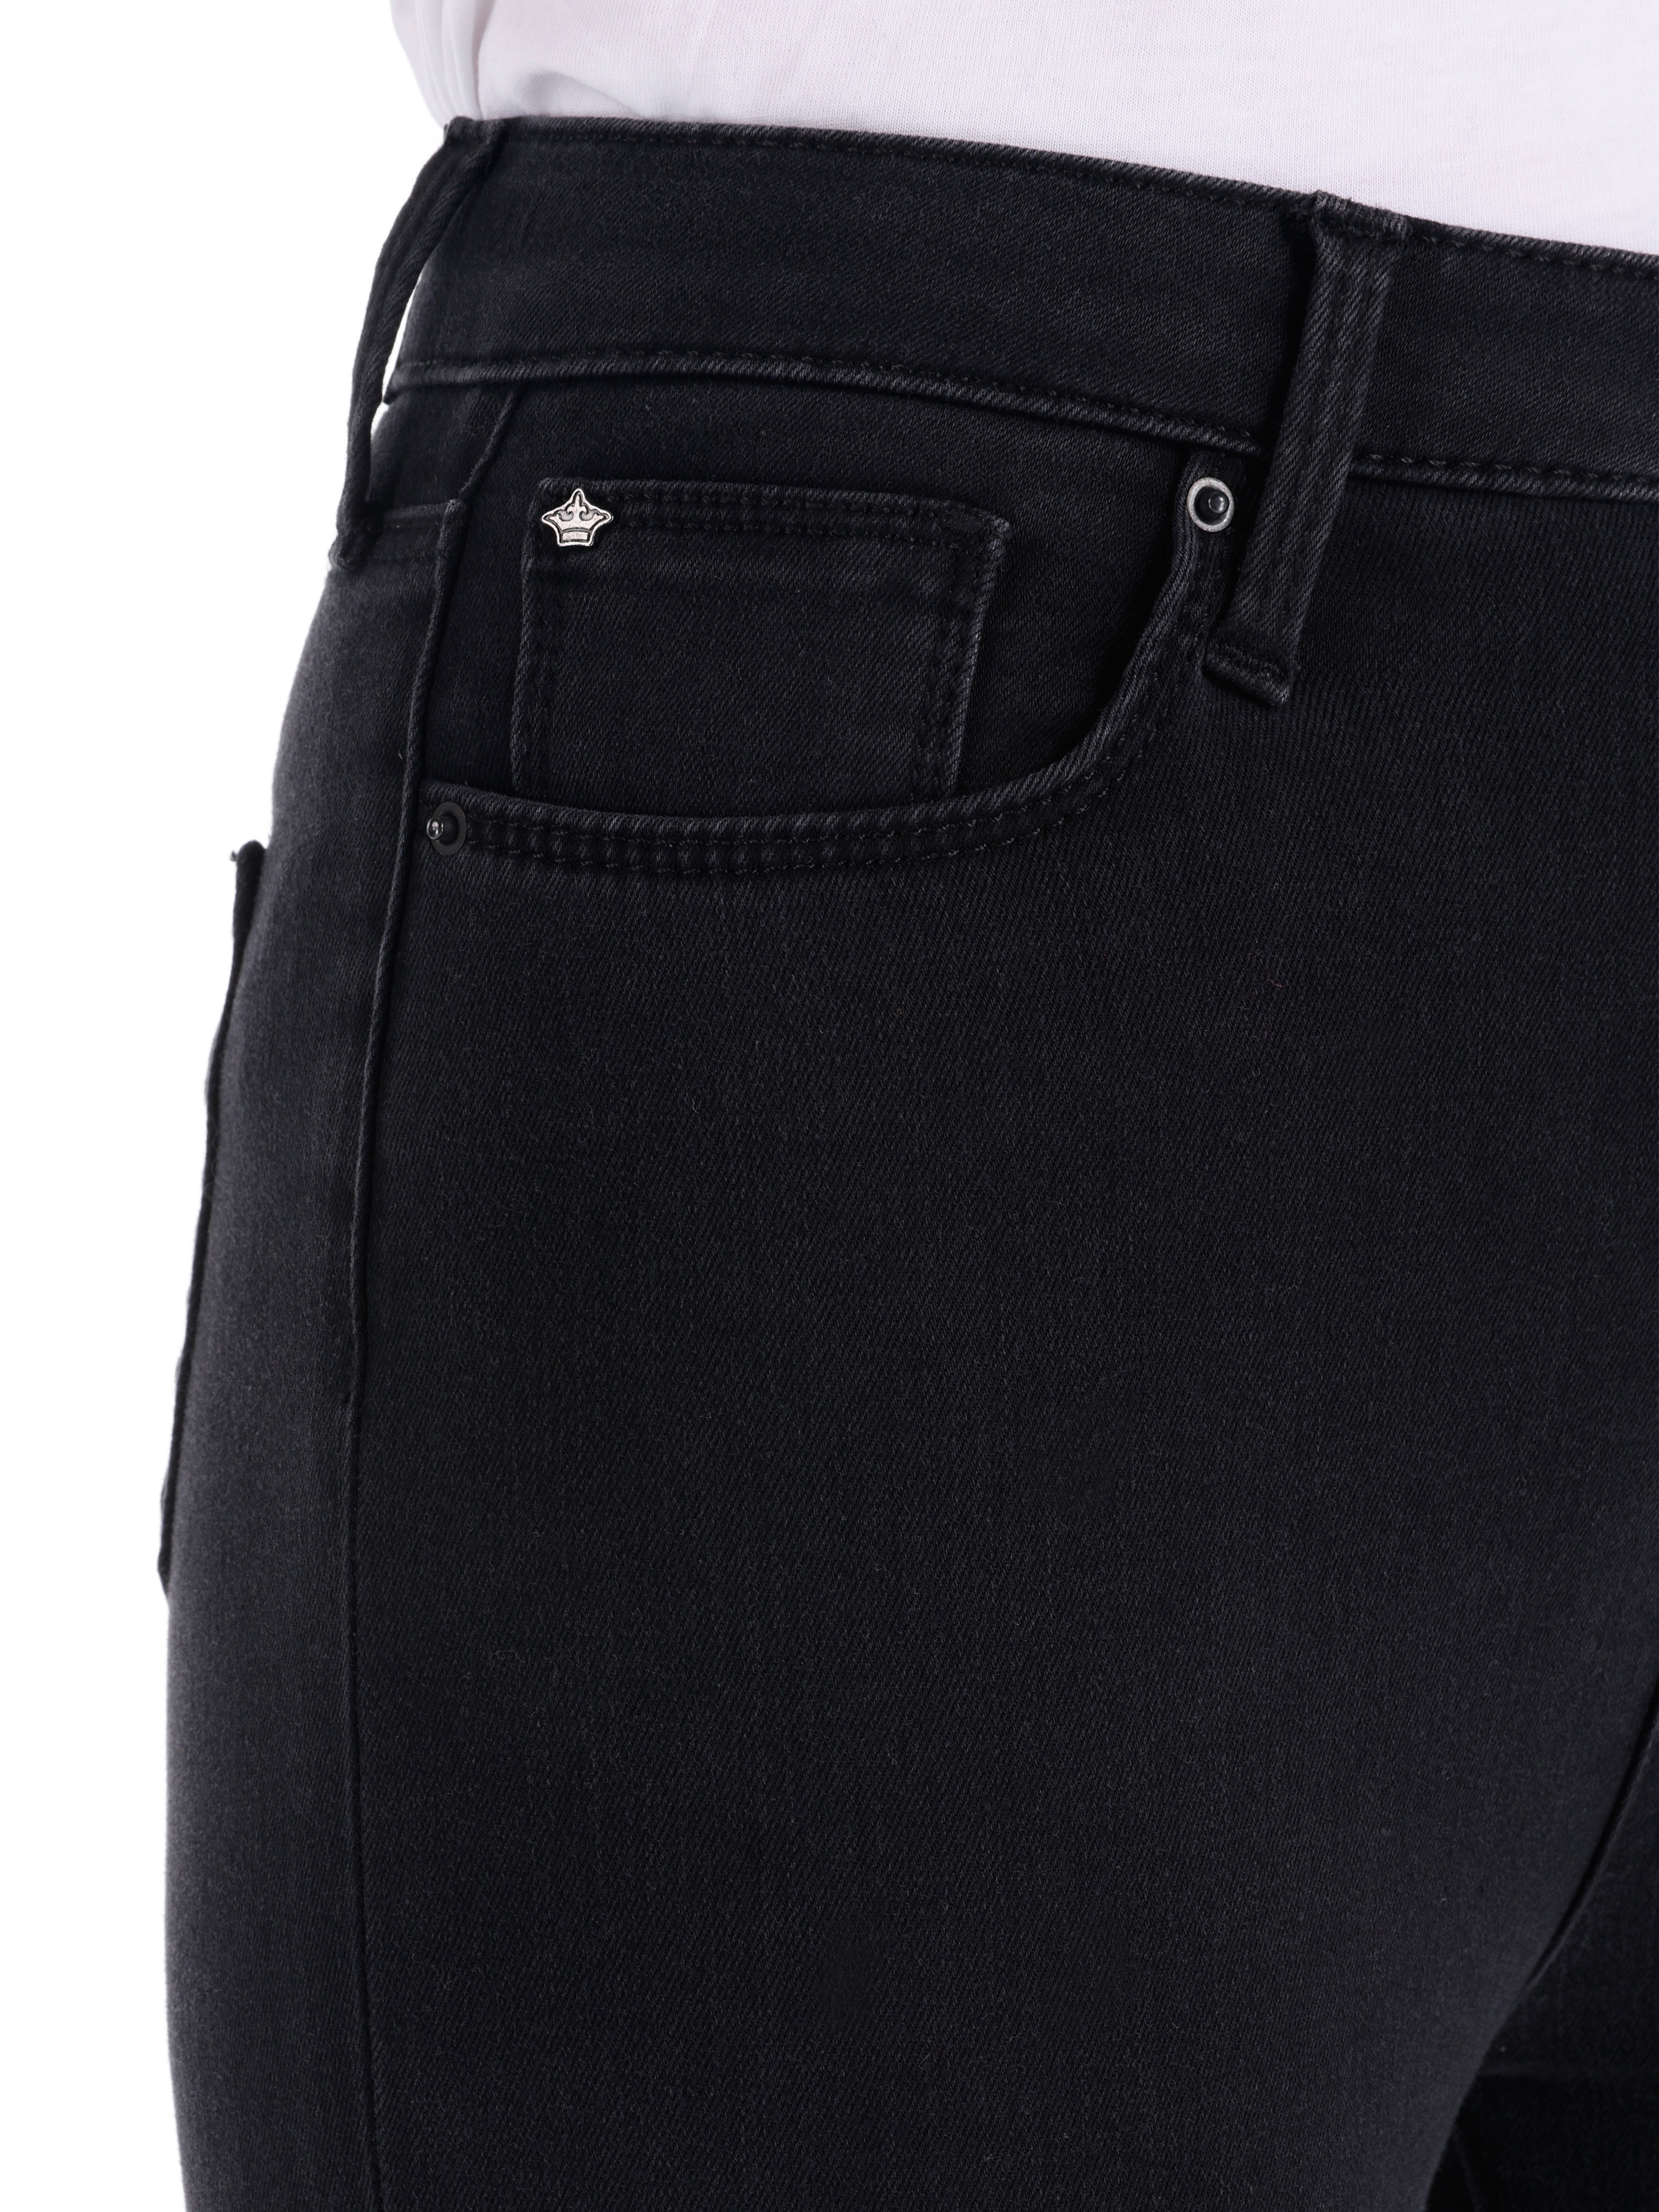 Afișați detalii pentru Pantaloni De Dama Denim Skinny Fit 760 DIANA